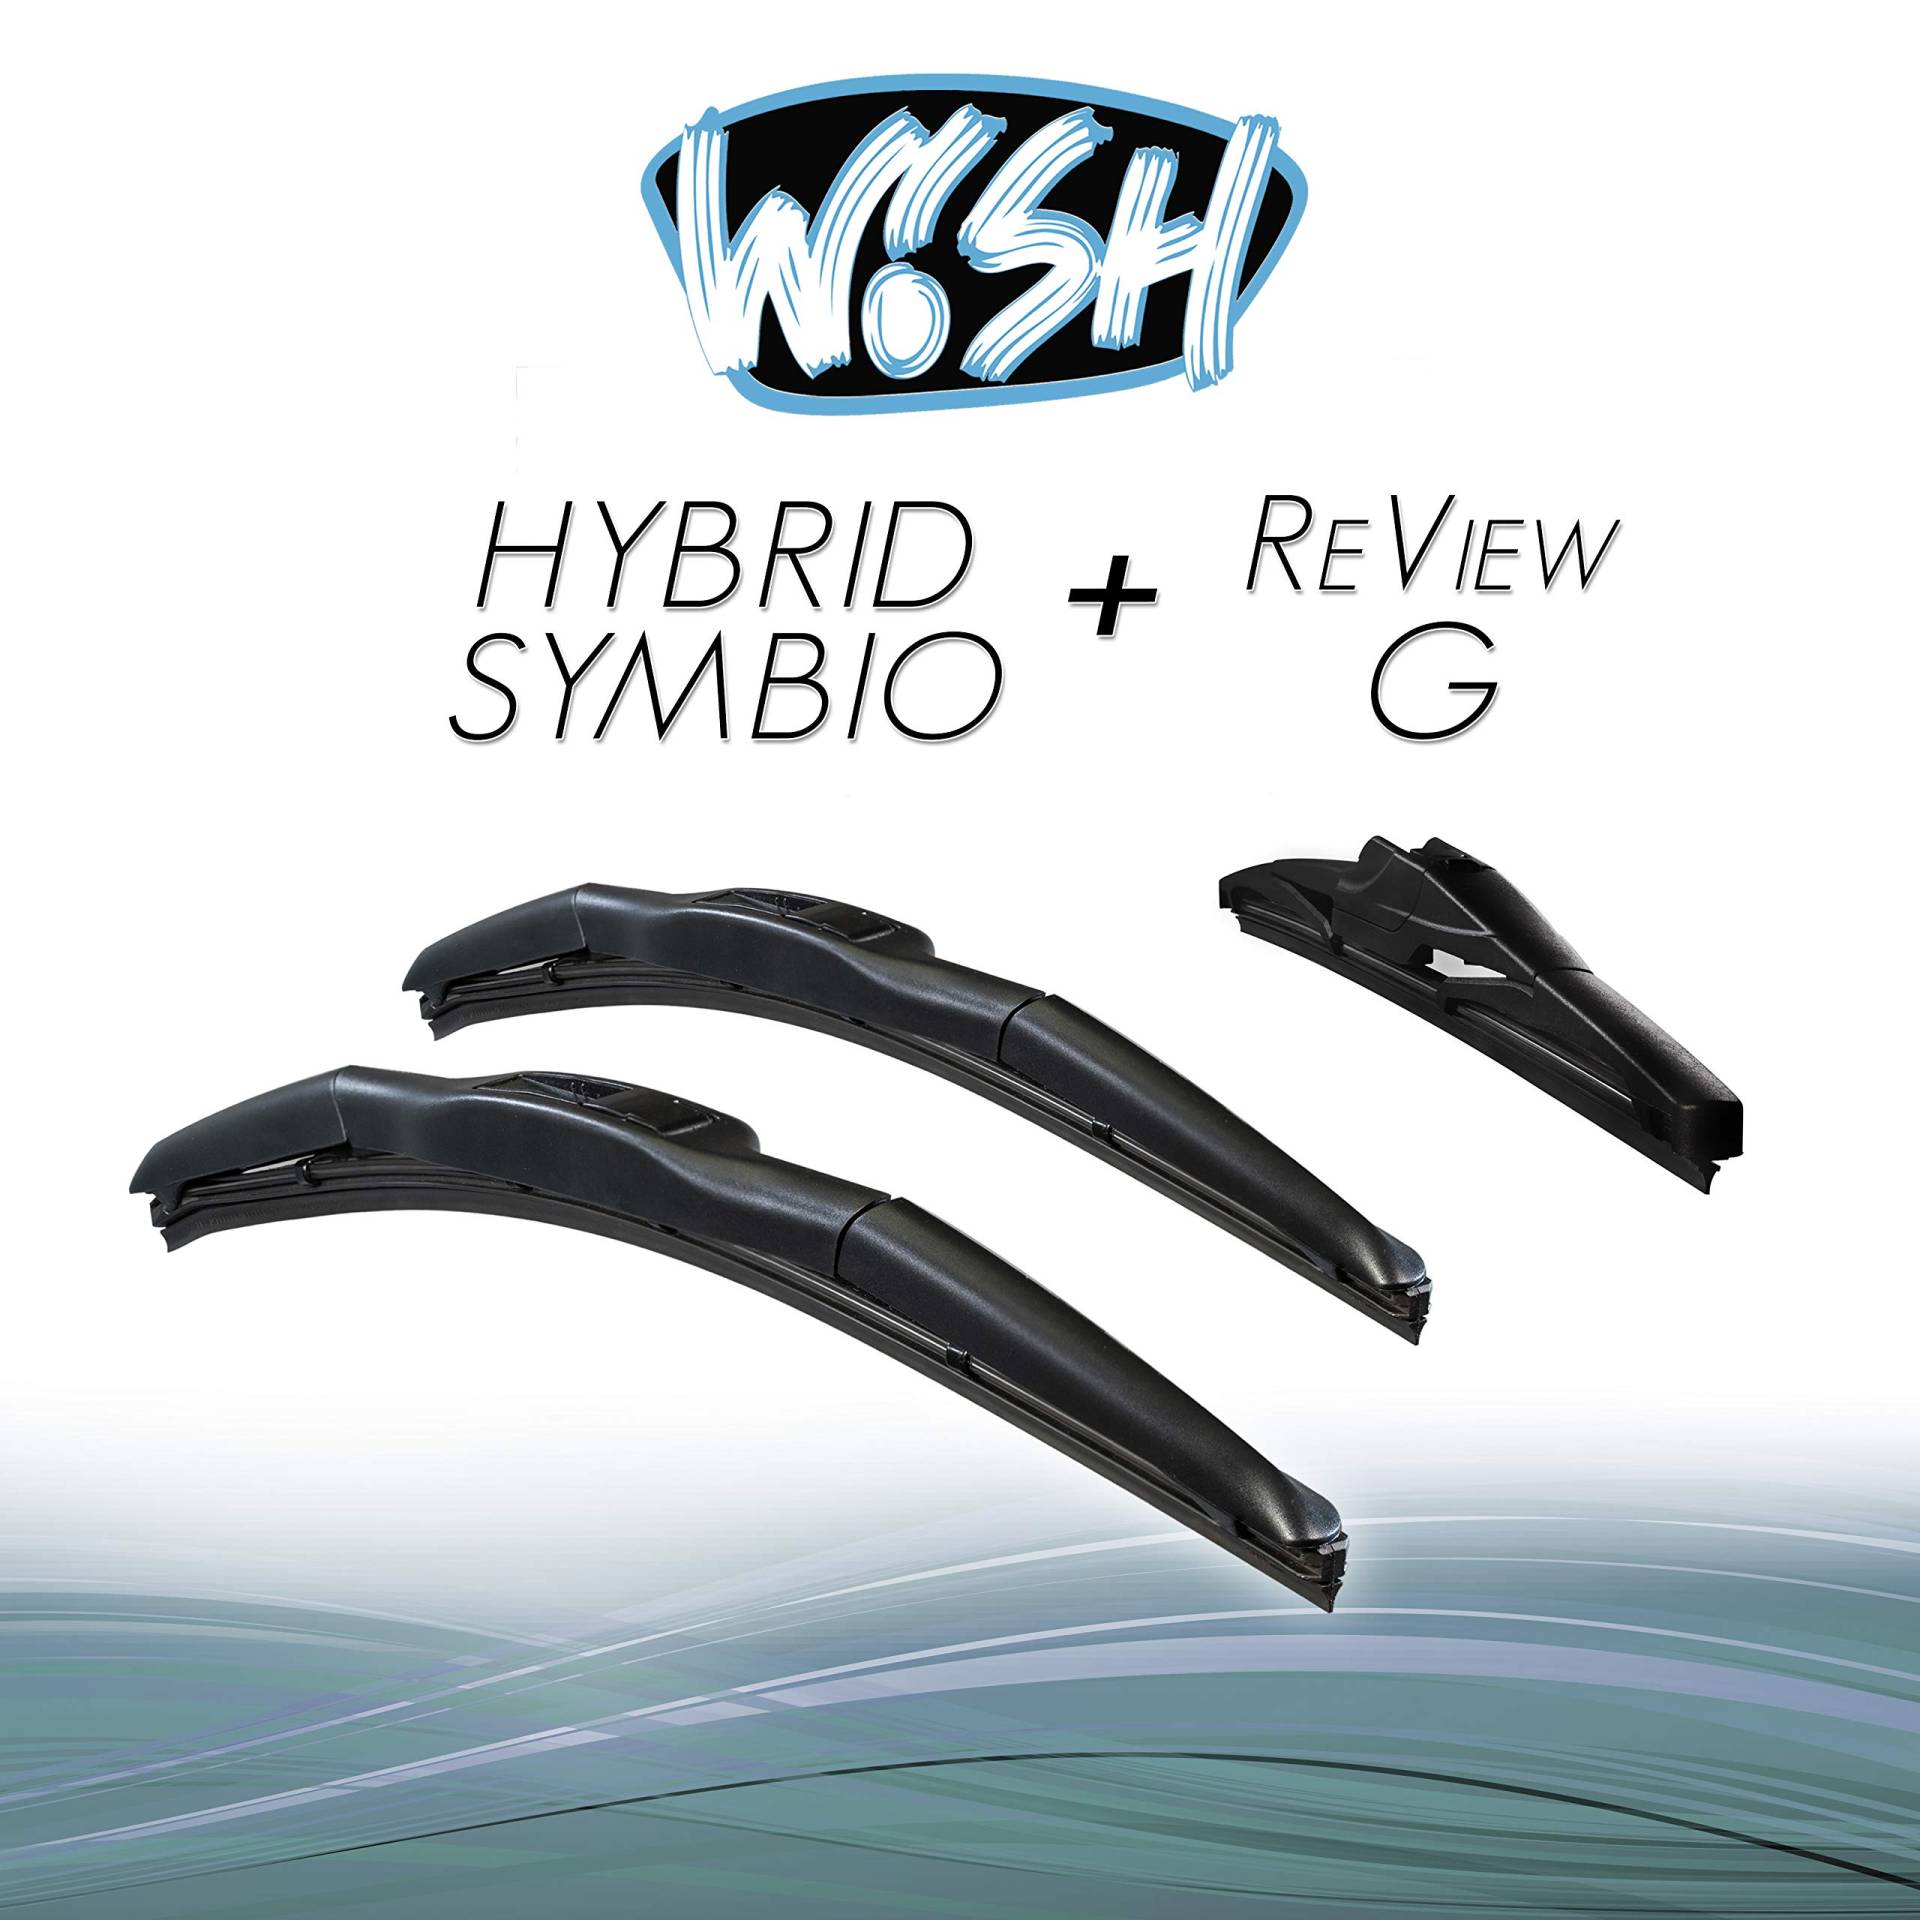 Wish® Hybrid Symbio Satz Front + Heck Scheibenwischer Länge: 24" 600mm / 20" 500mm / 11" 280mm Wischblätter Vorne und Hinten Hybrid-Scheibenwischer + Review G HS24.20.11RG von Wish